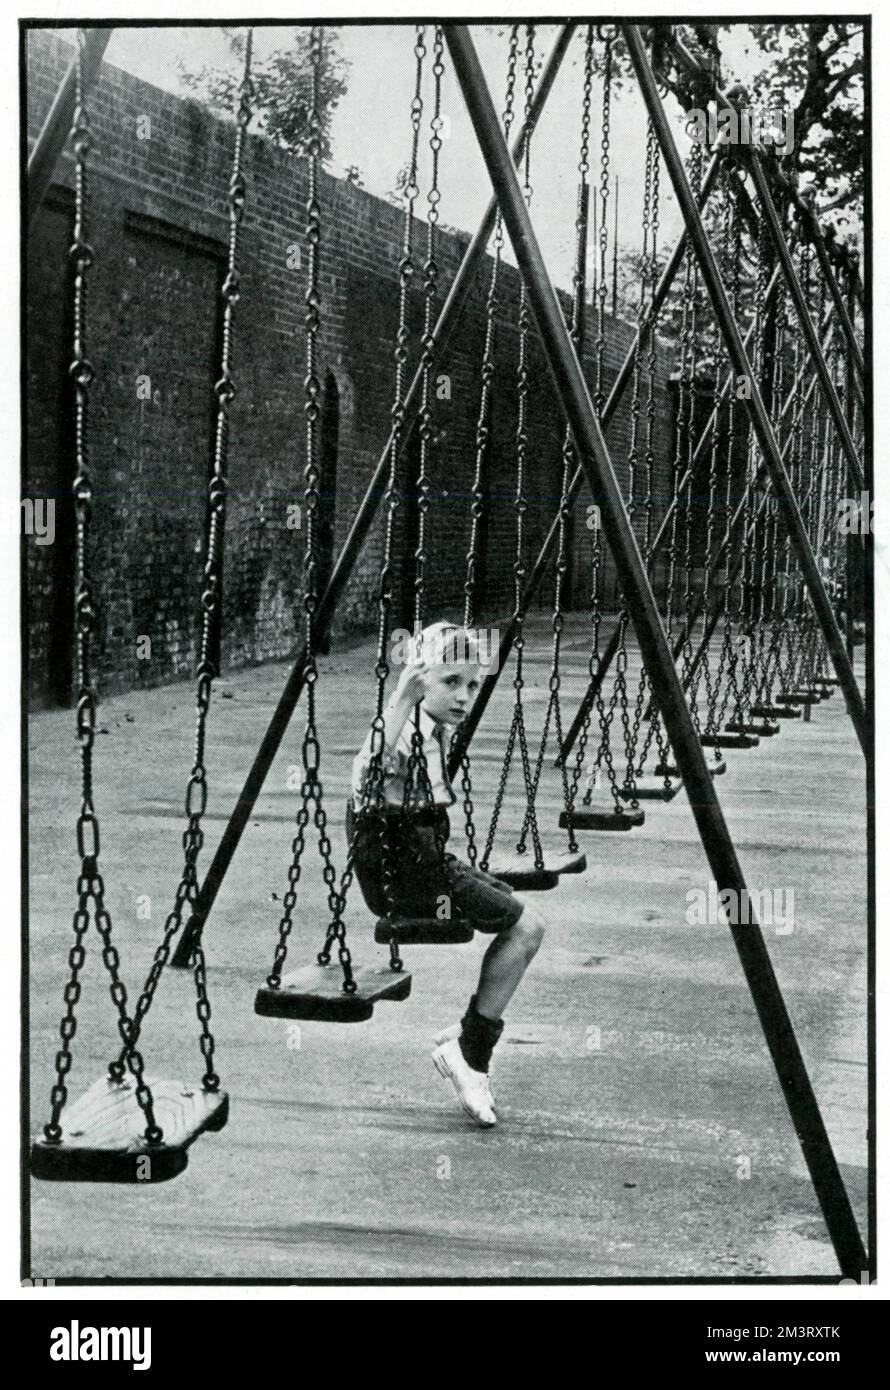 Fotografia che mostra un giovane ragazzo su un altalena a Geraldine May Harmsworth Park. Il parco è vuoto a seguito dell'evacuazione di migliaia di bambini nelle prime settimane successive allo scoppio della guerra. Settembre 1939 Foto Stock